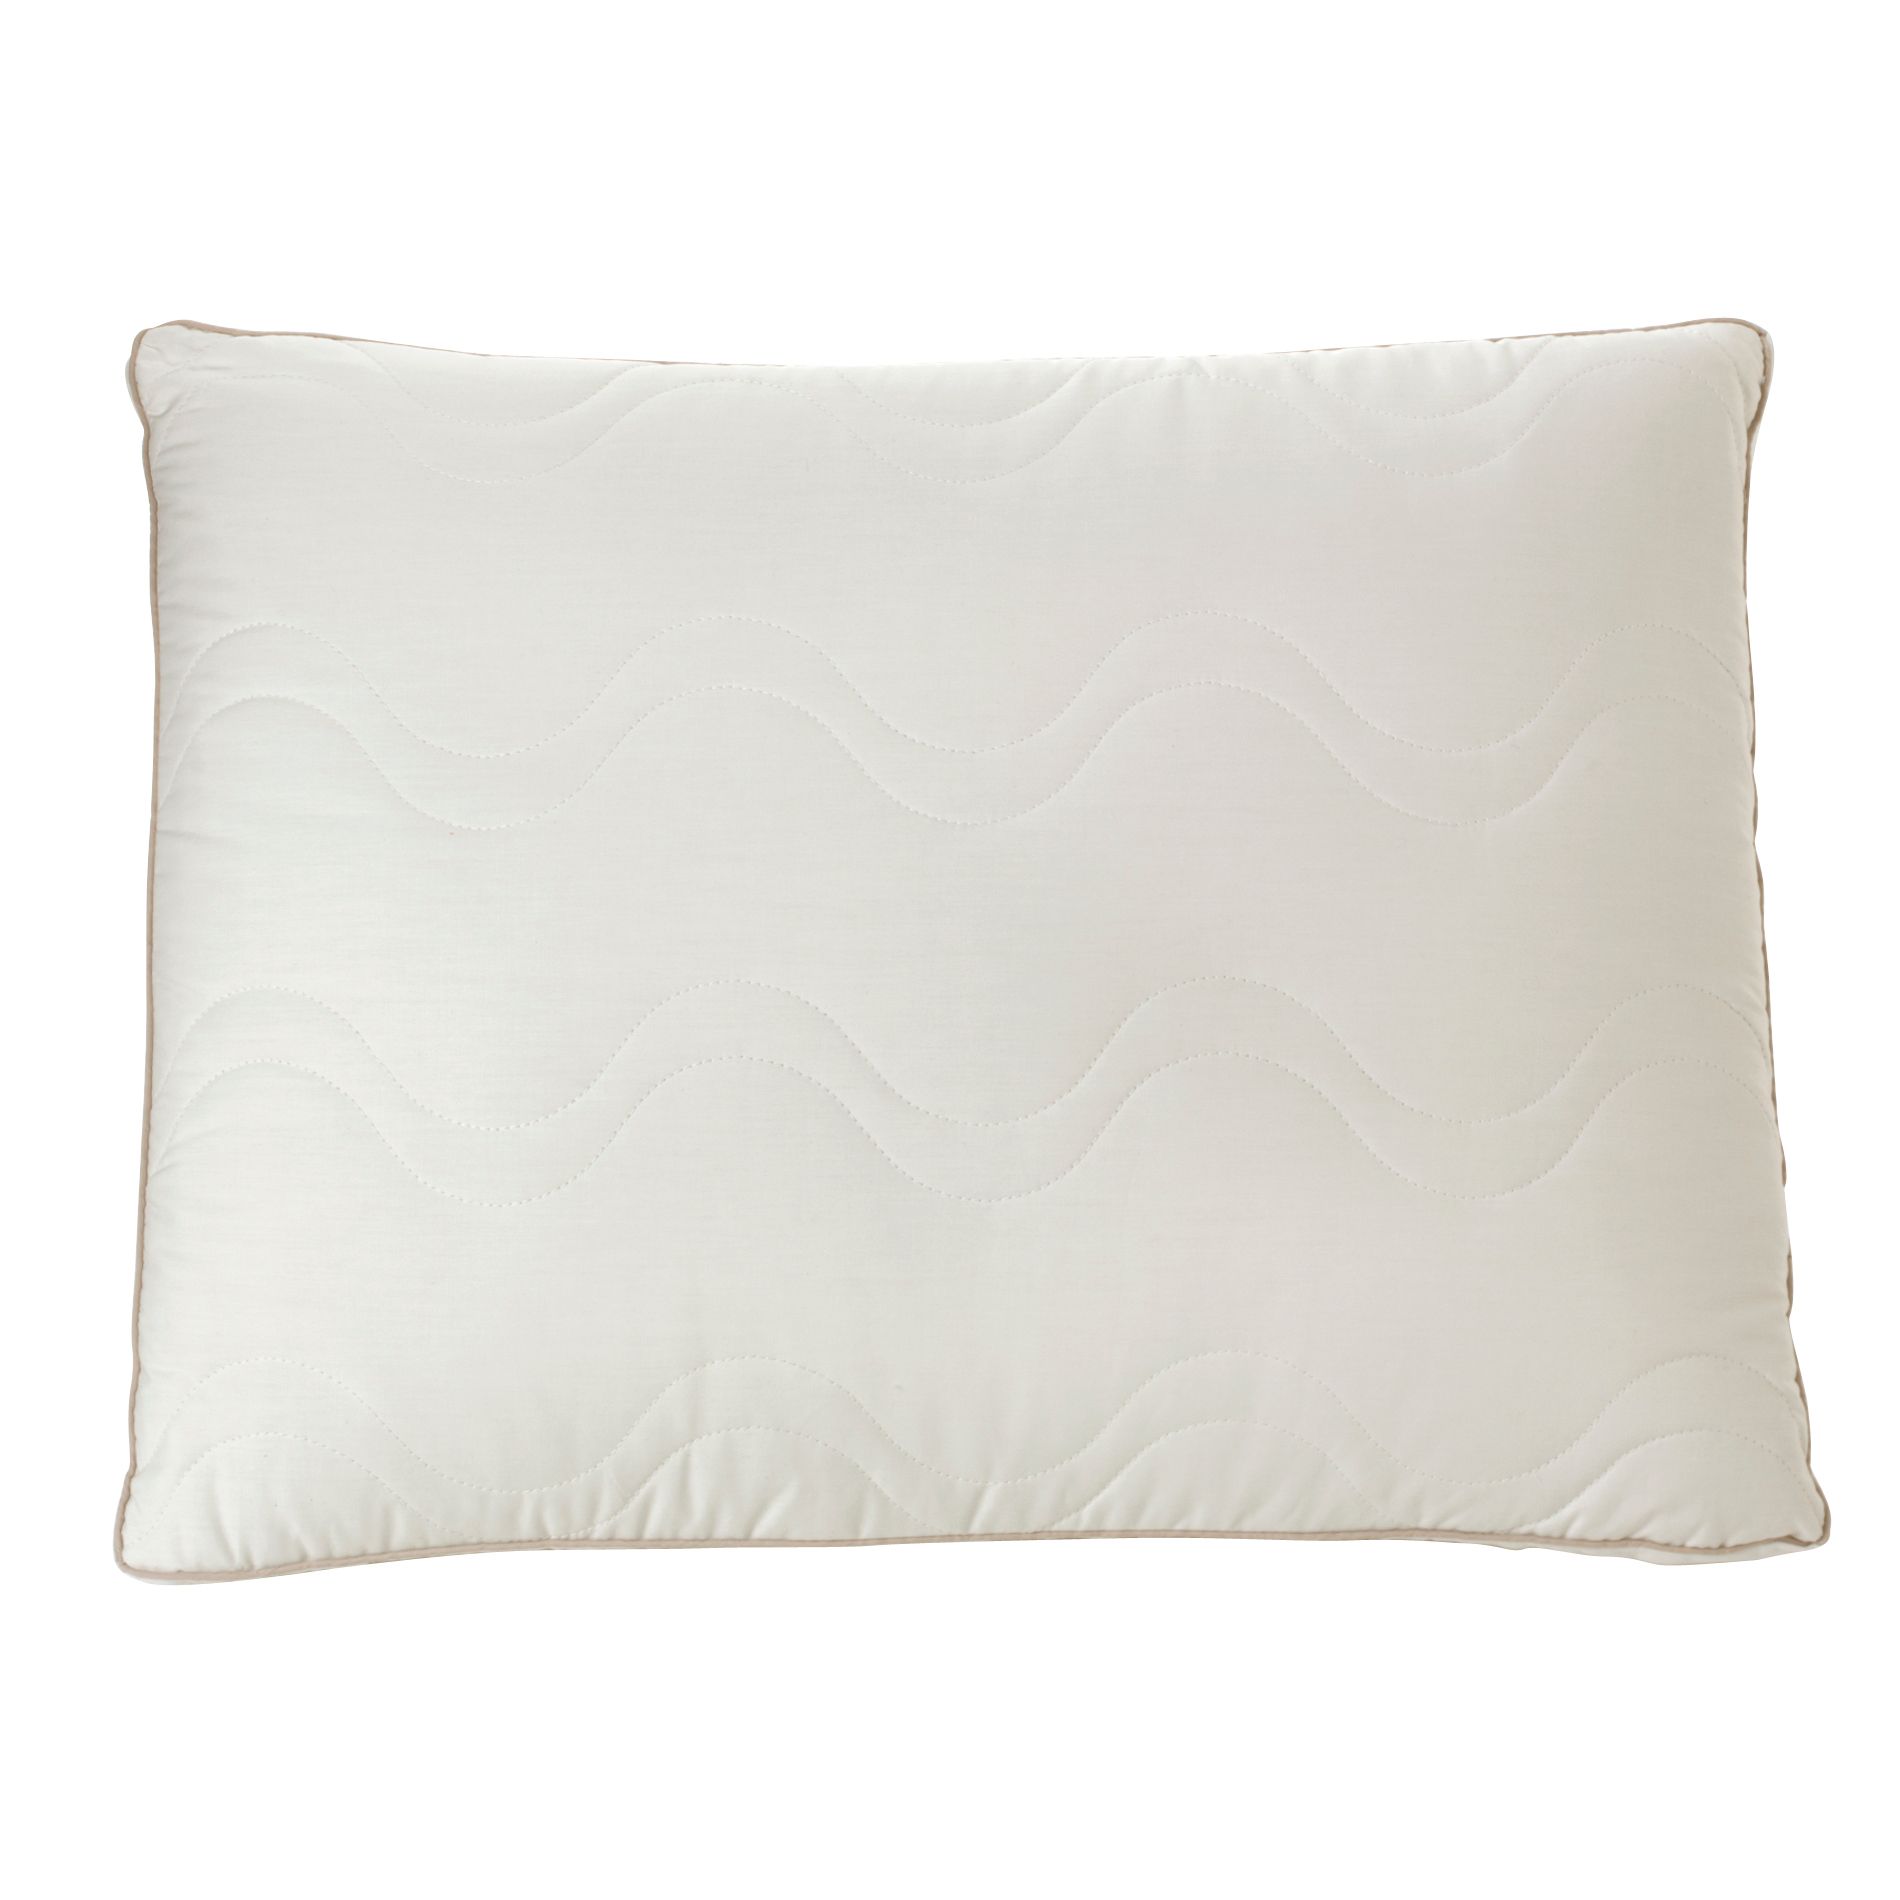 NutraTemp Gusset Pillow